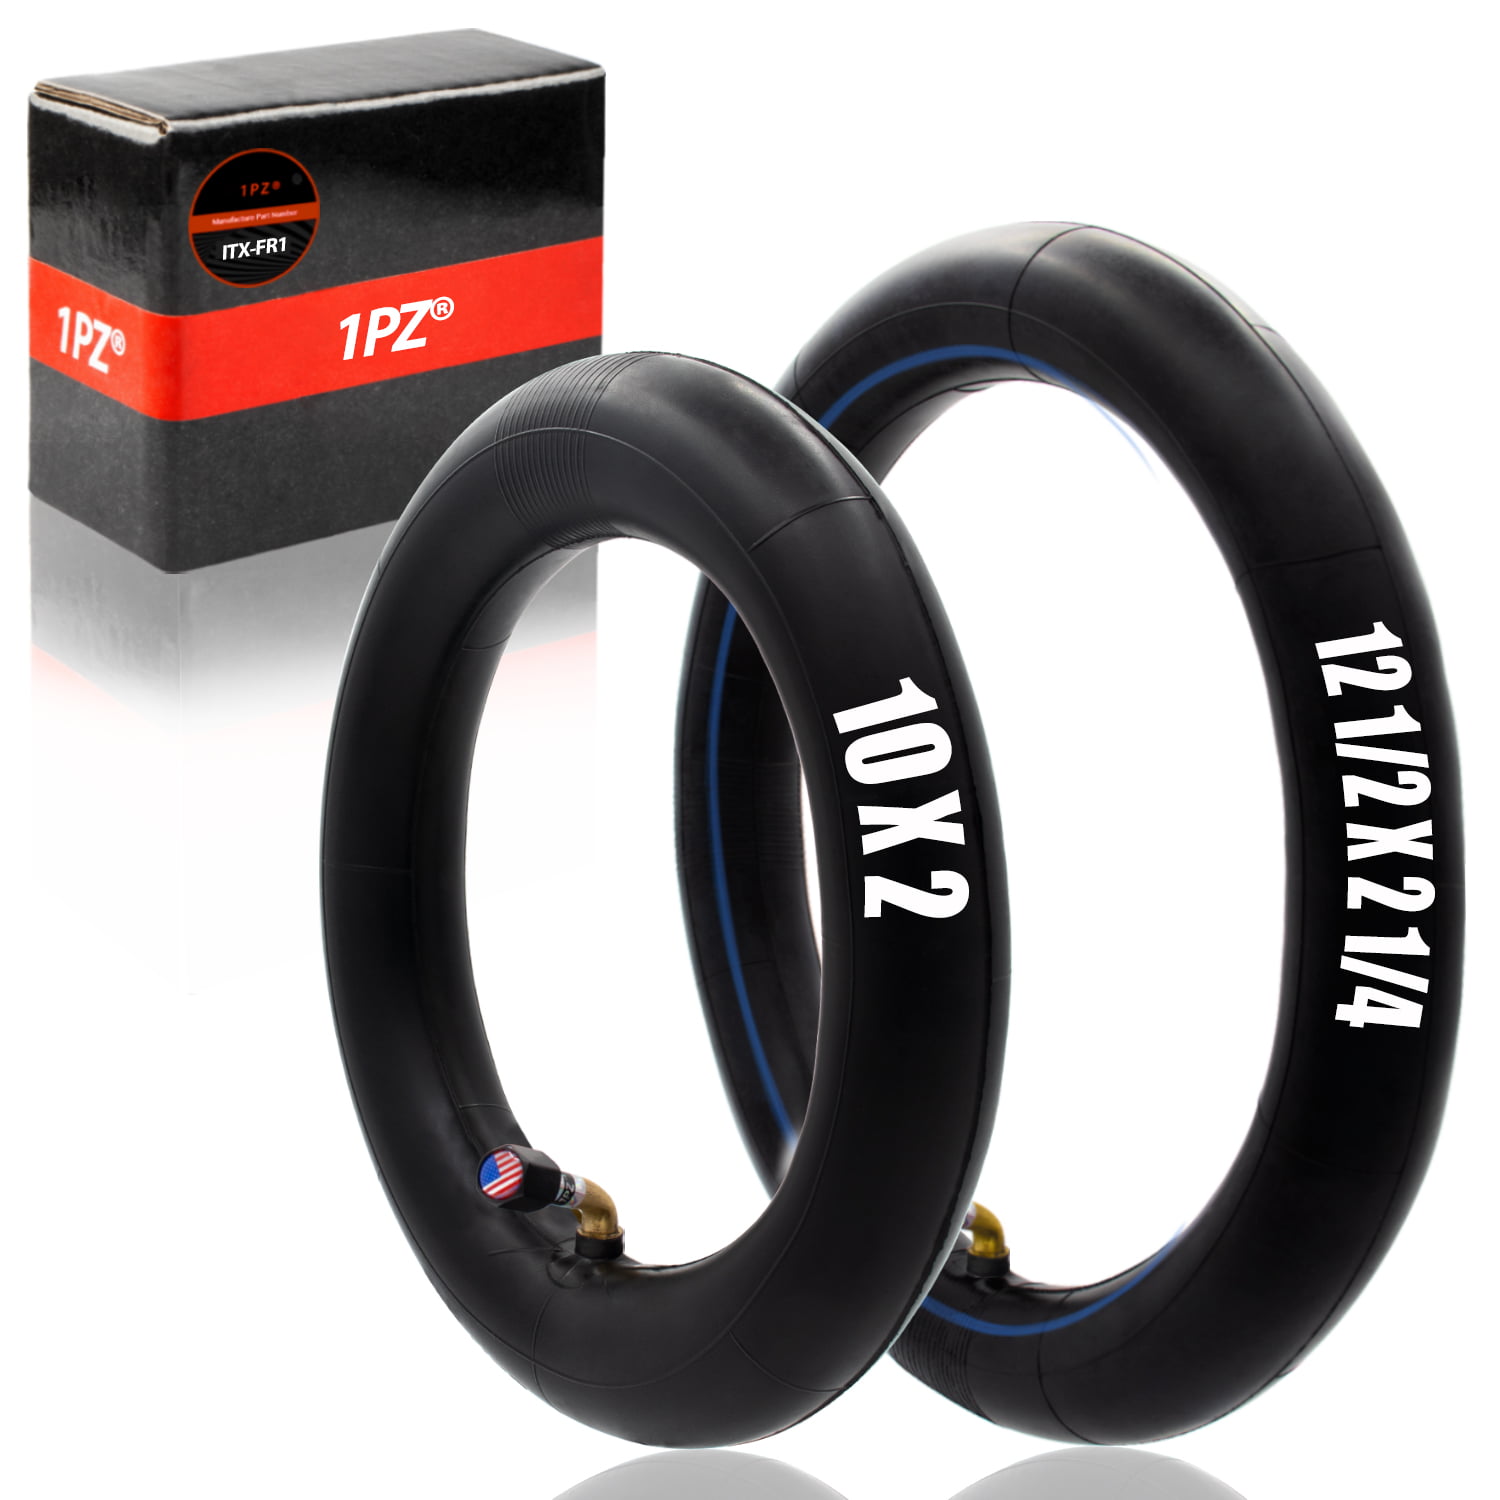 10" x 2.5" Tire & Inner Tube Rubber Tyre Wheel Non-Slip for Tricycle Kids Bike